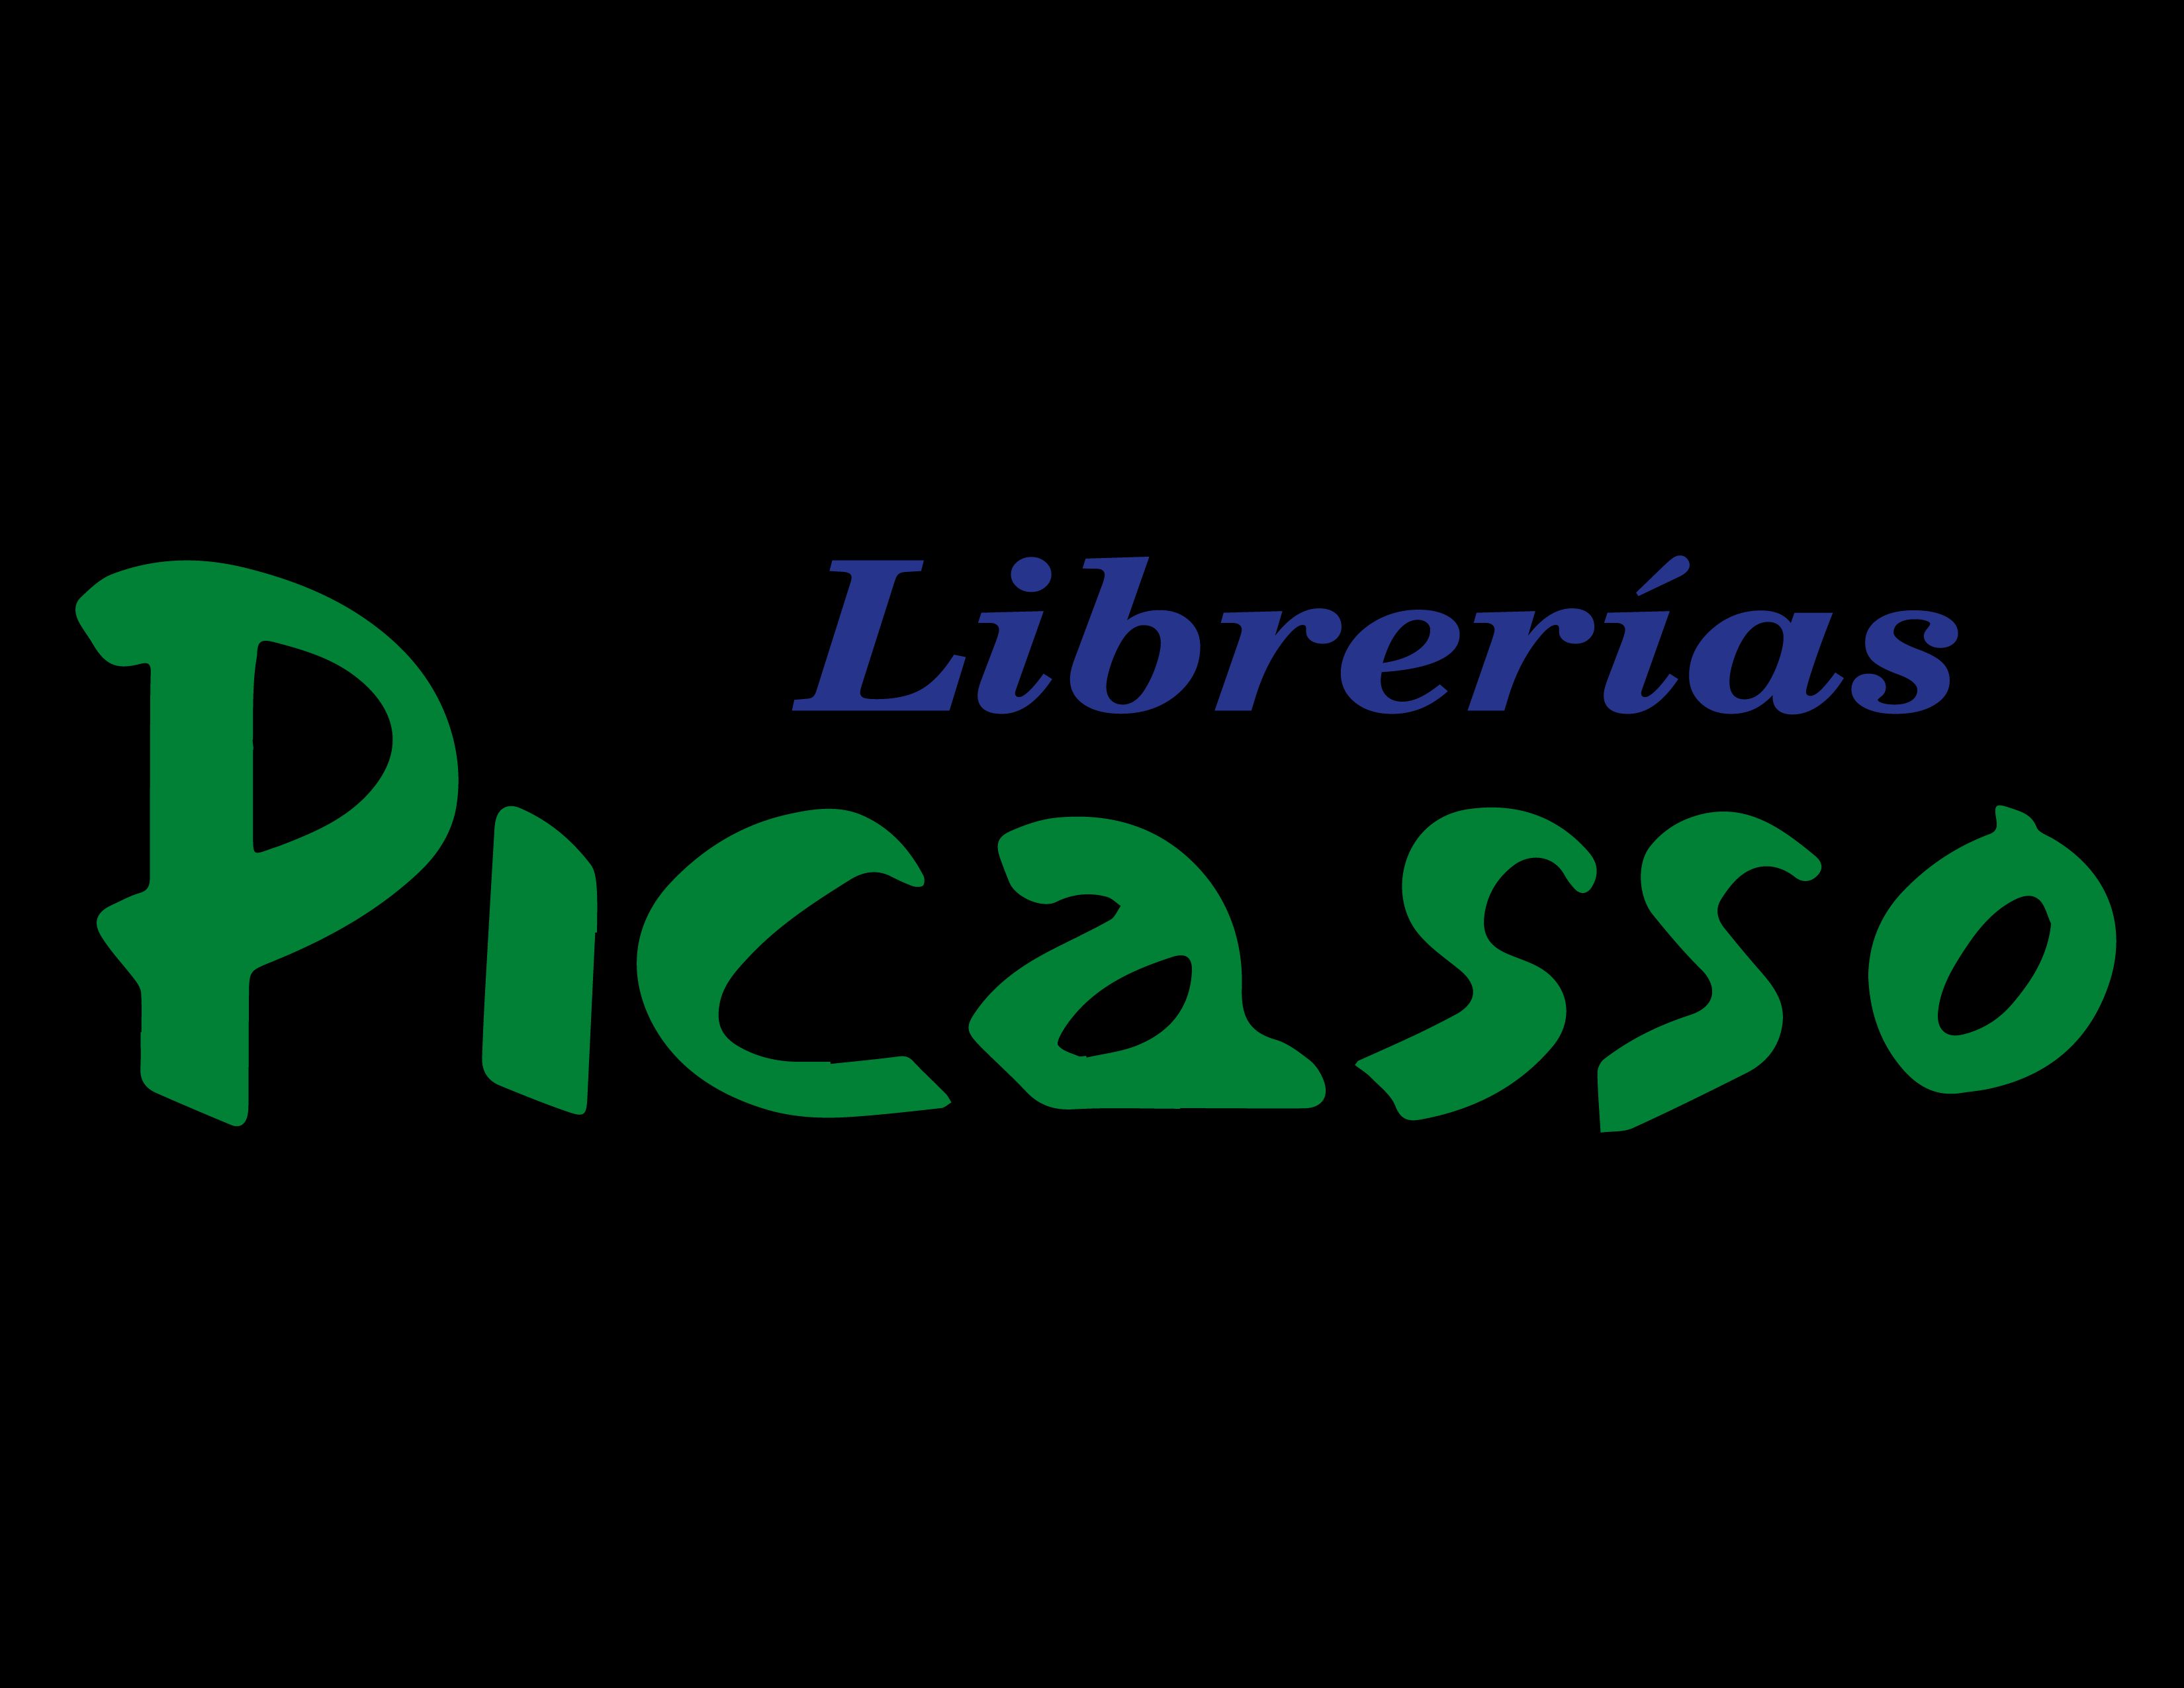 Librerías Picasso